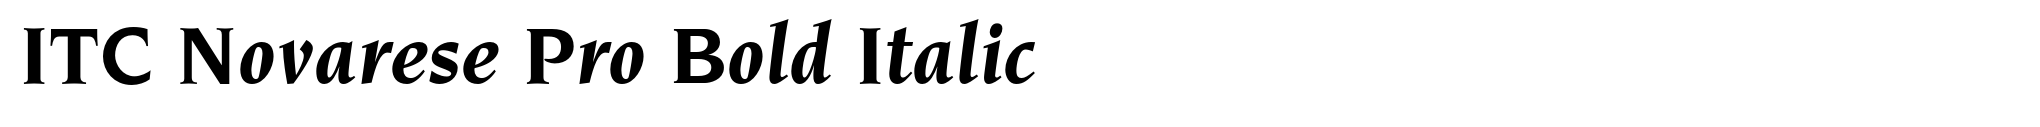 ITC Novarese Pro Bold Italic image